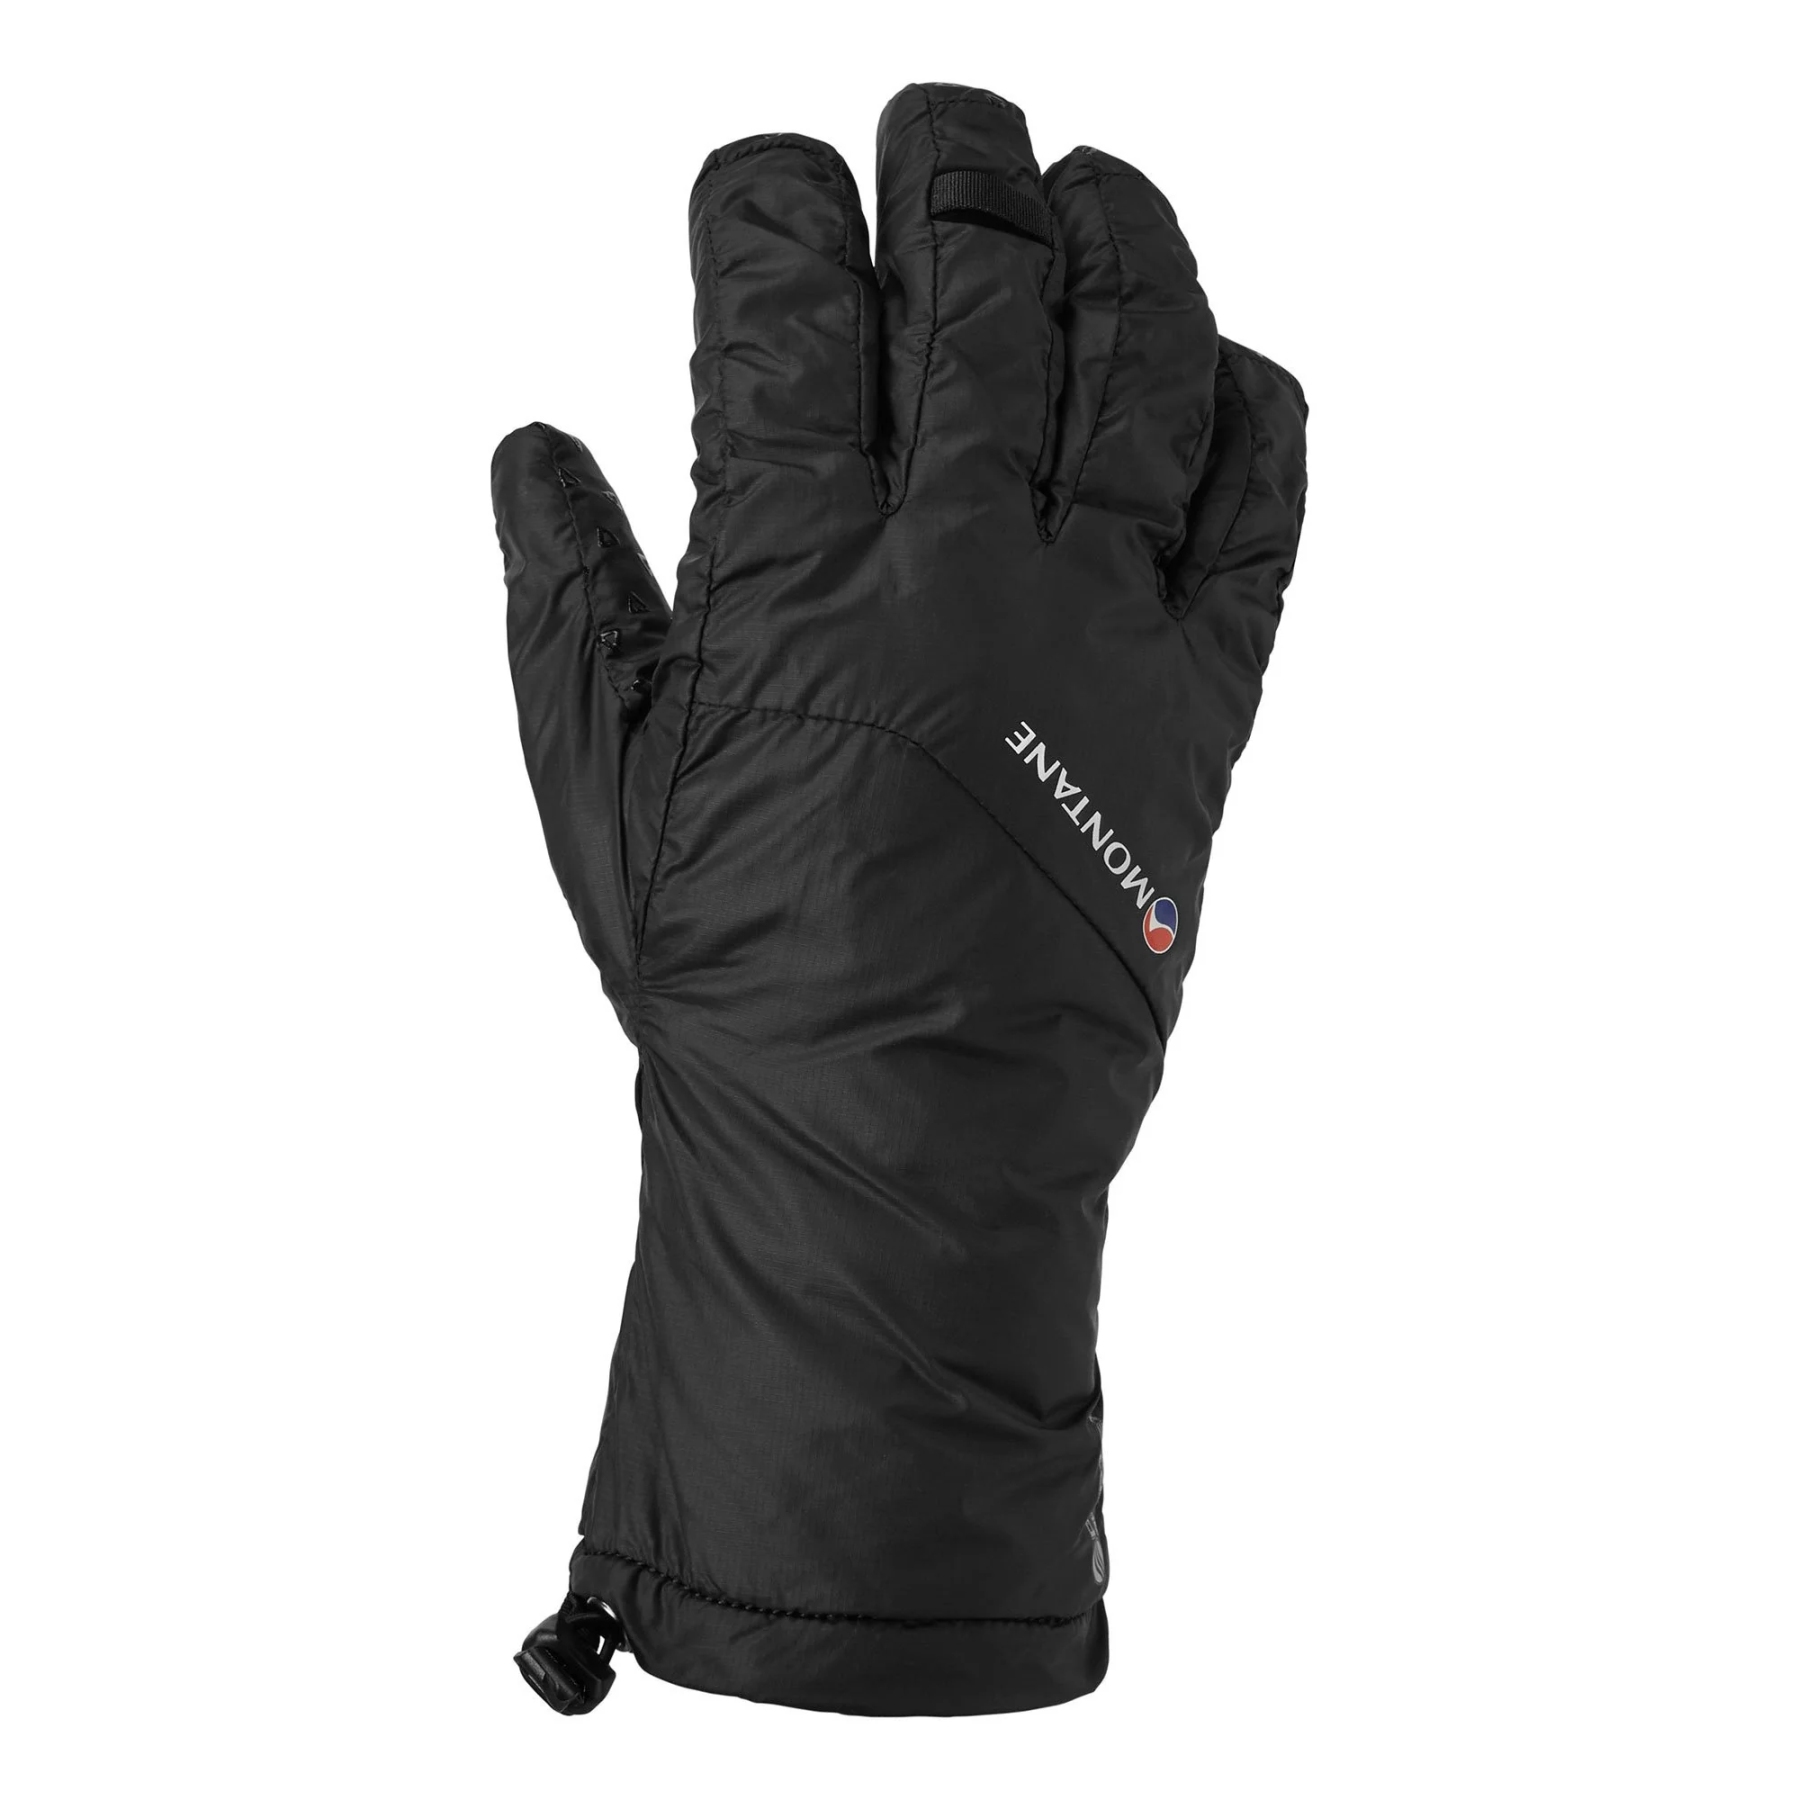 Produktbild von Montane Prism Dry Line Damen Wasserdichte Handschuhe - schwarz